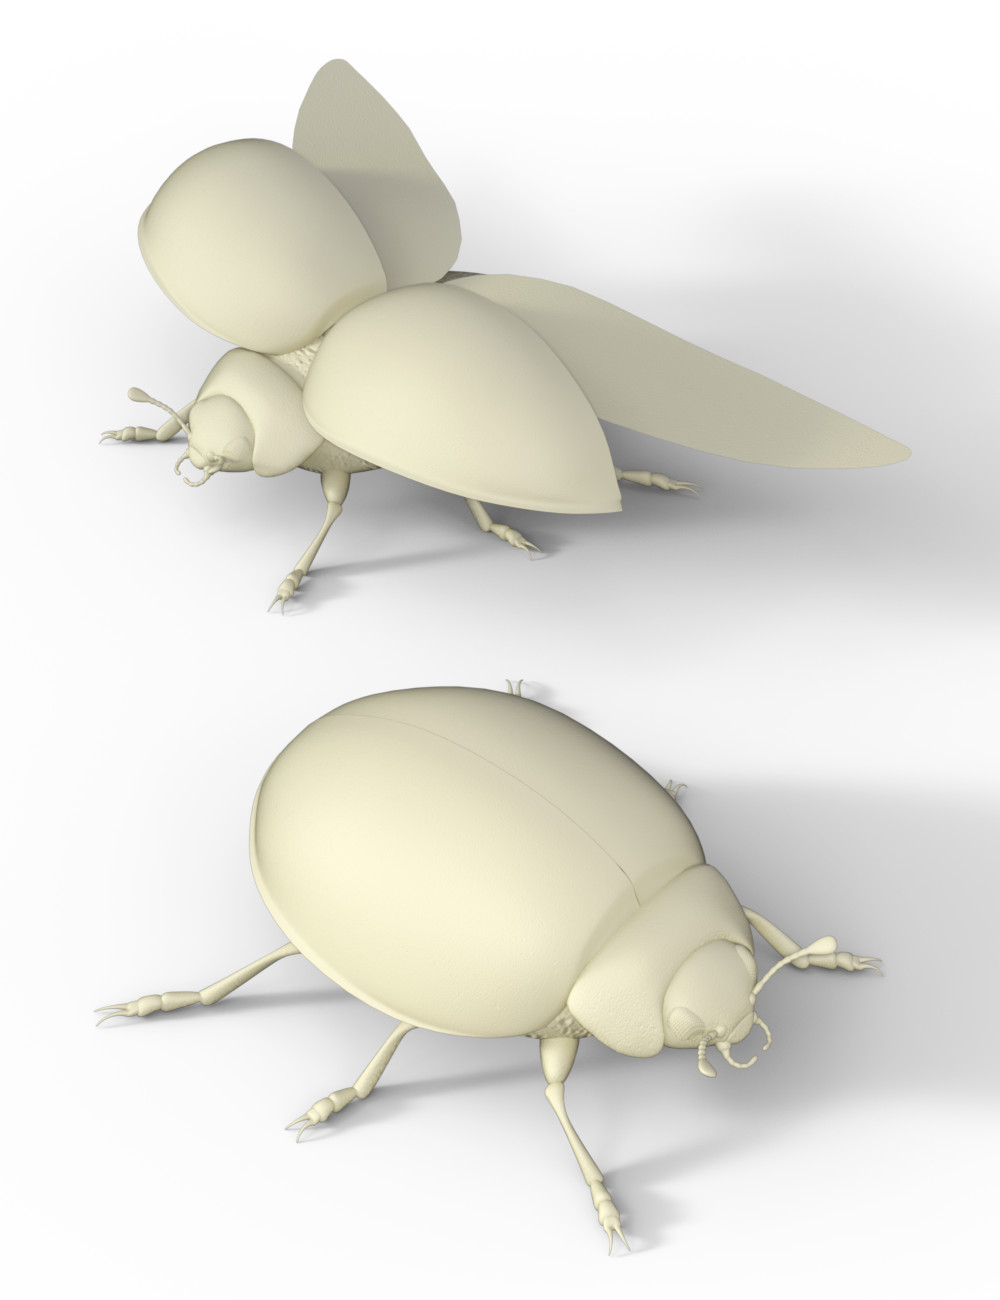 Ladybug by: Sylvan, 3D Models by Daz 3D